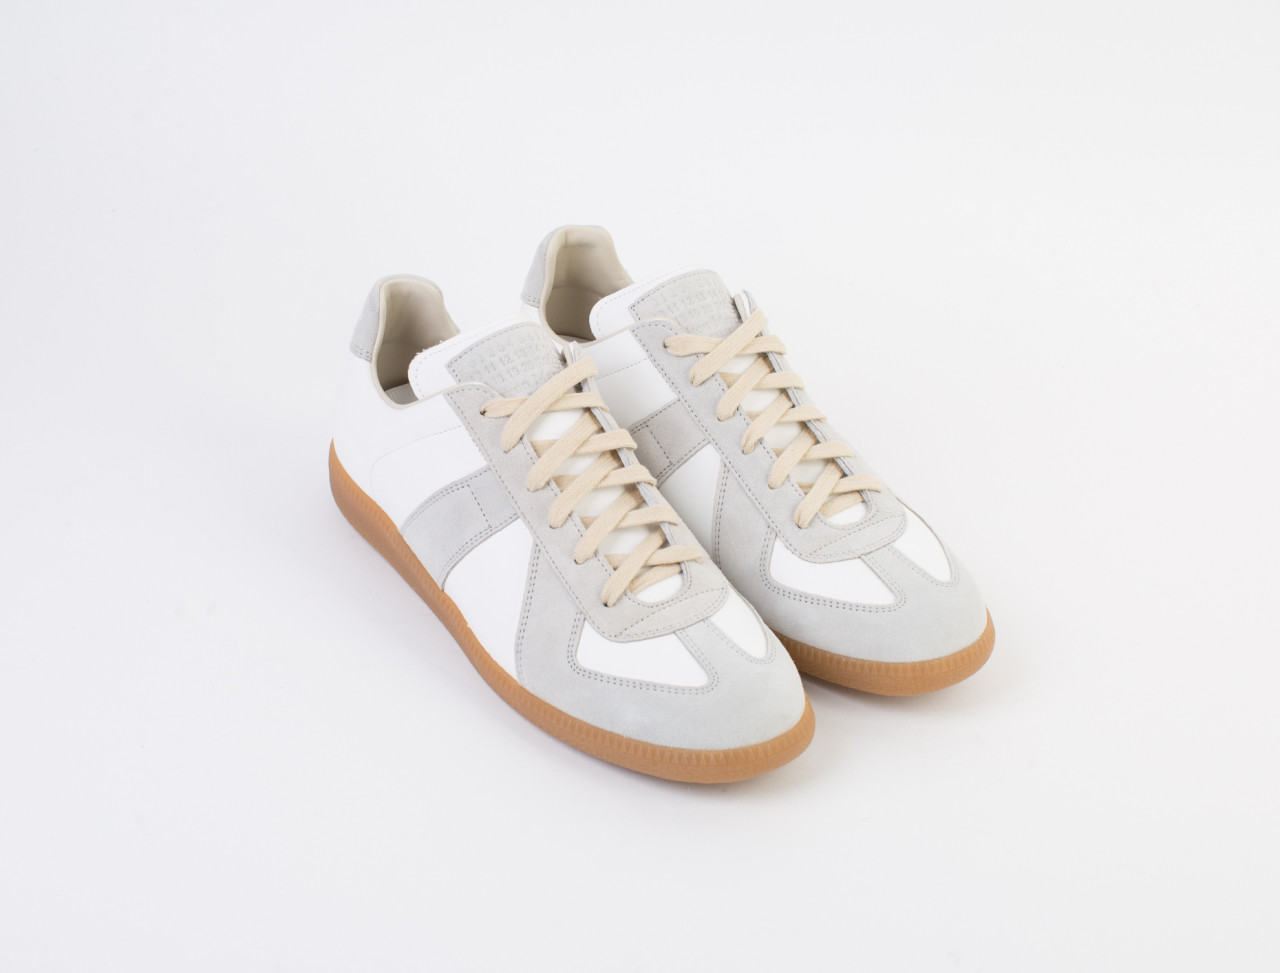 Maison Margiela Replica Sneaker | Voo Store Berlin | Worldwide Shipping